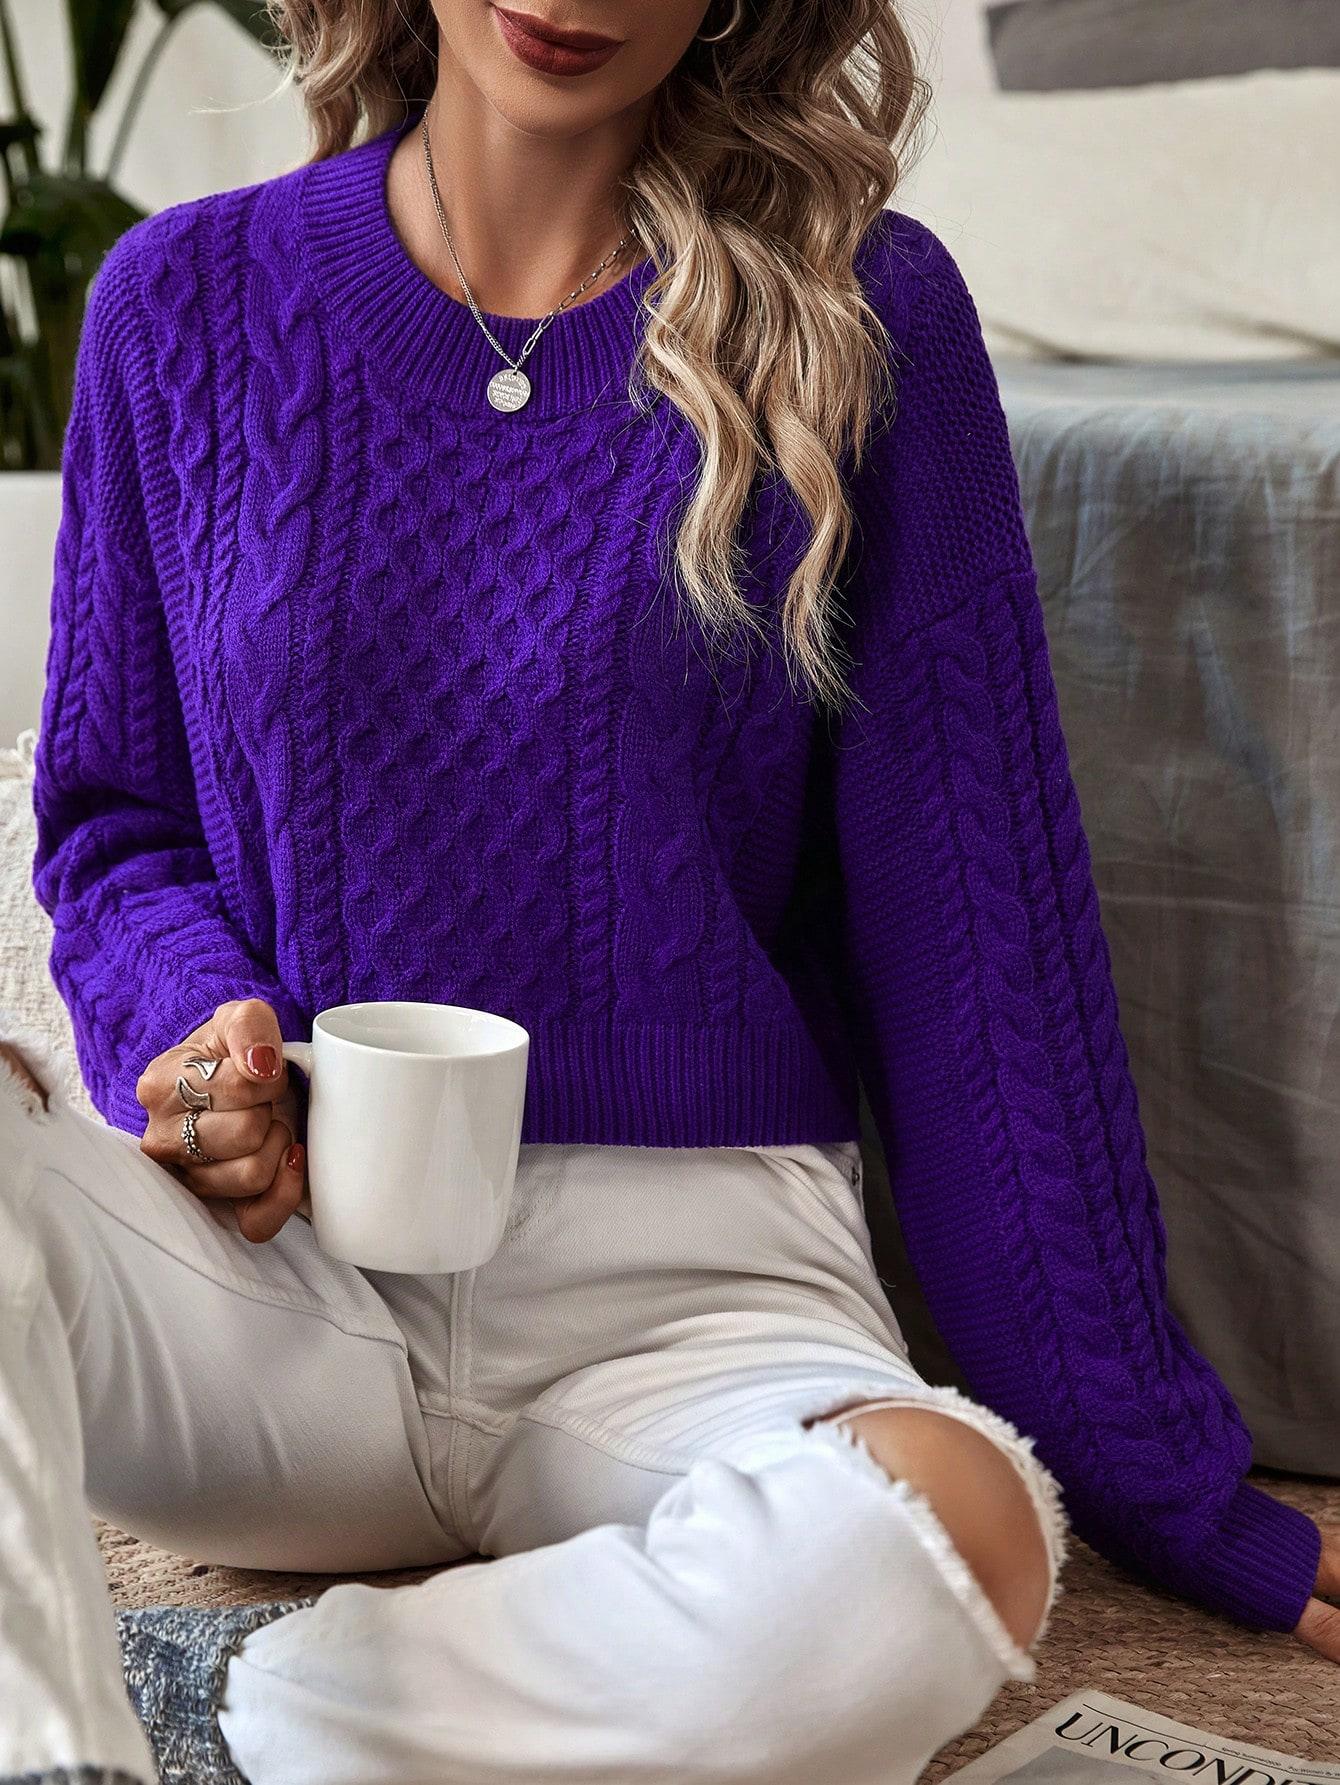 fioletowy krótki sweter okrągły dekolt tekstura